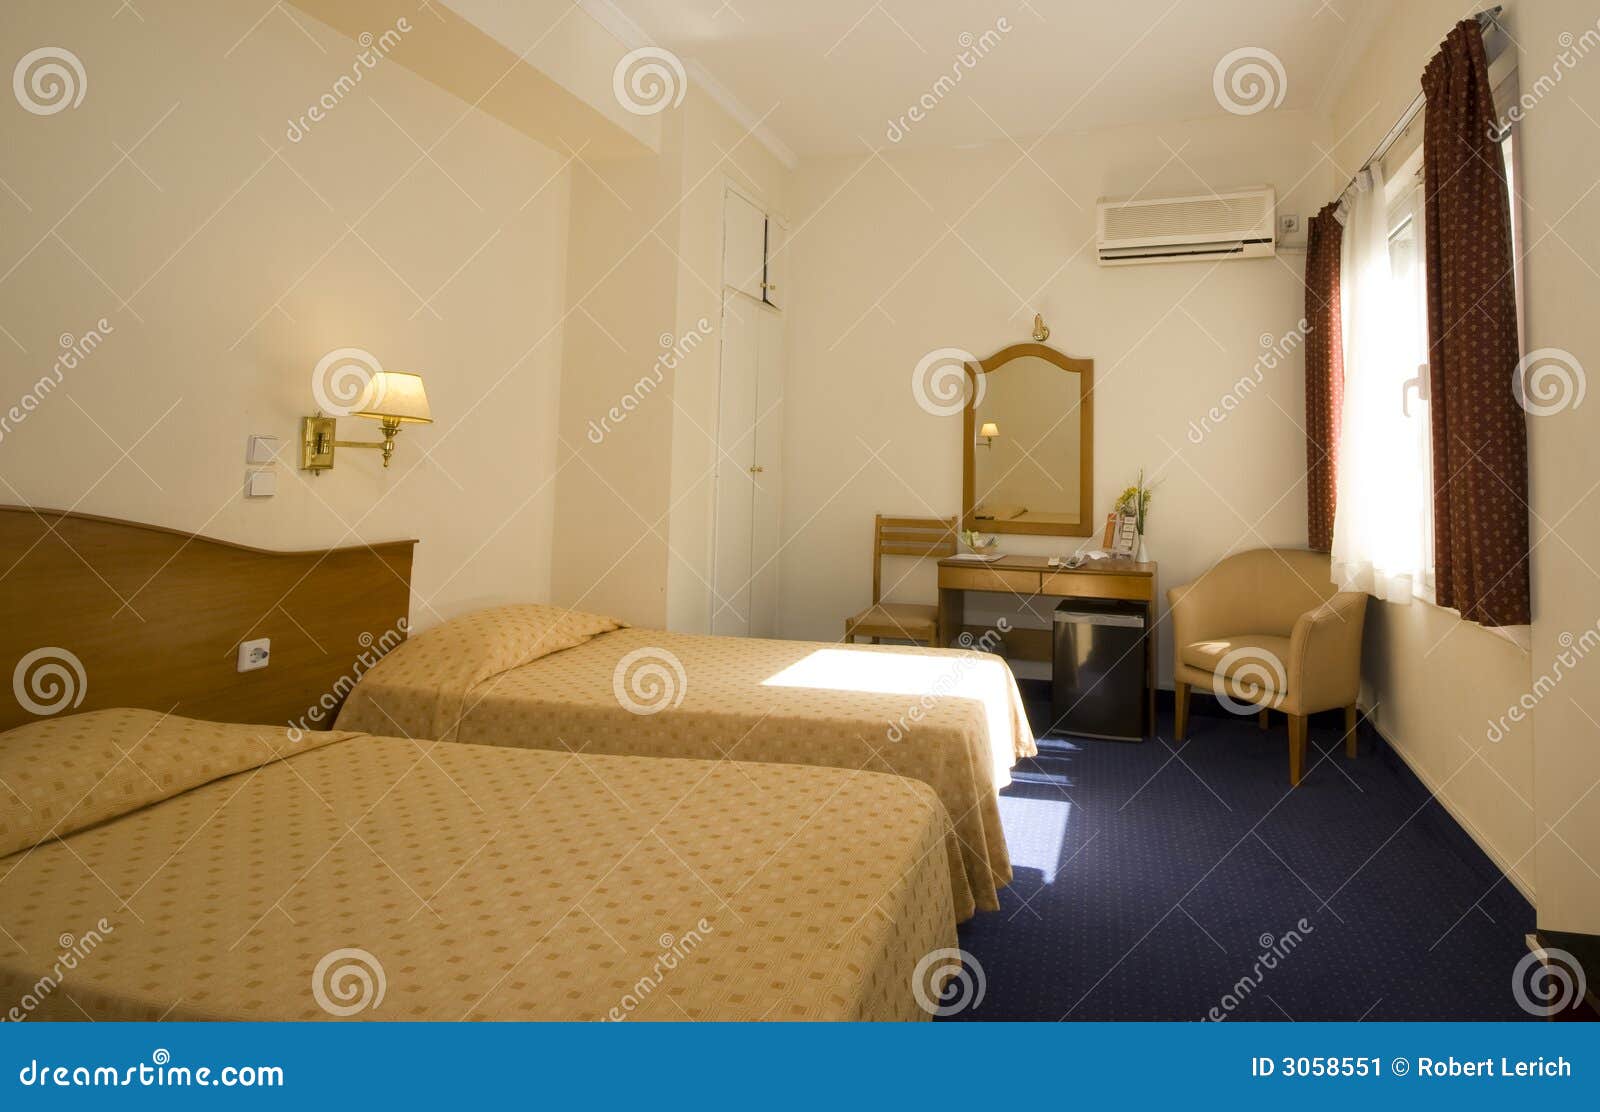 雅典旅馆客房. 典型雅典预算值希腊旅馆中间价格的空间